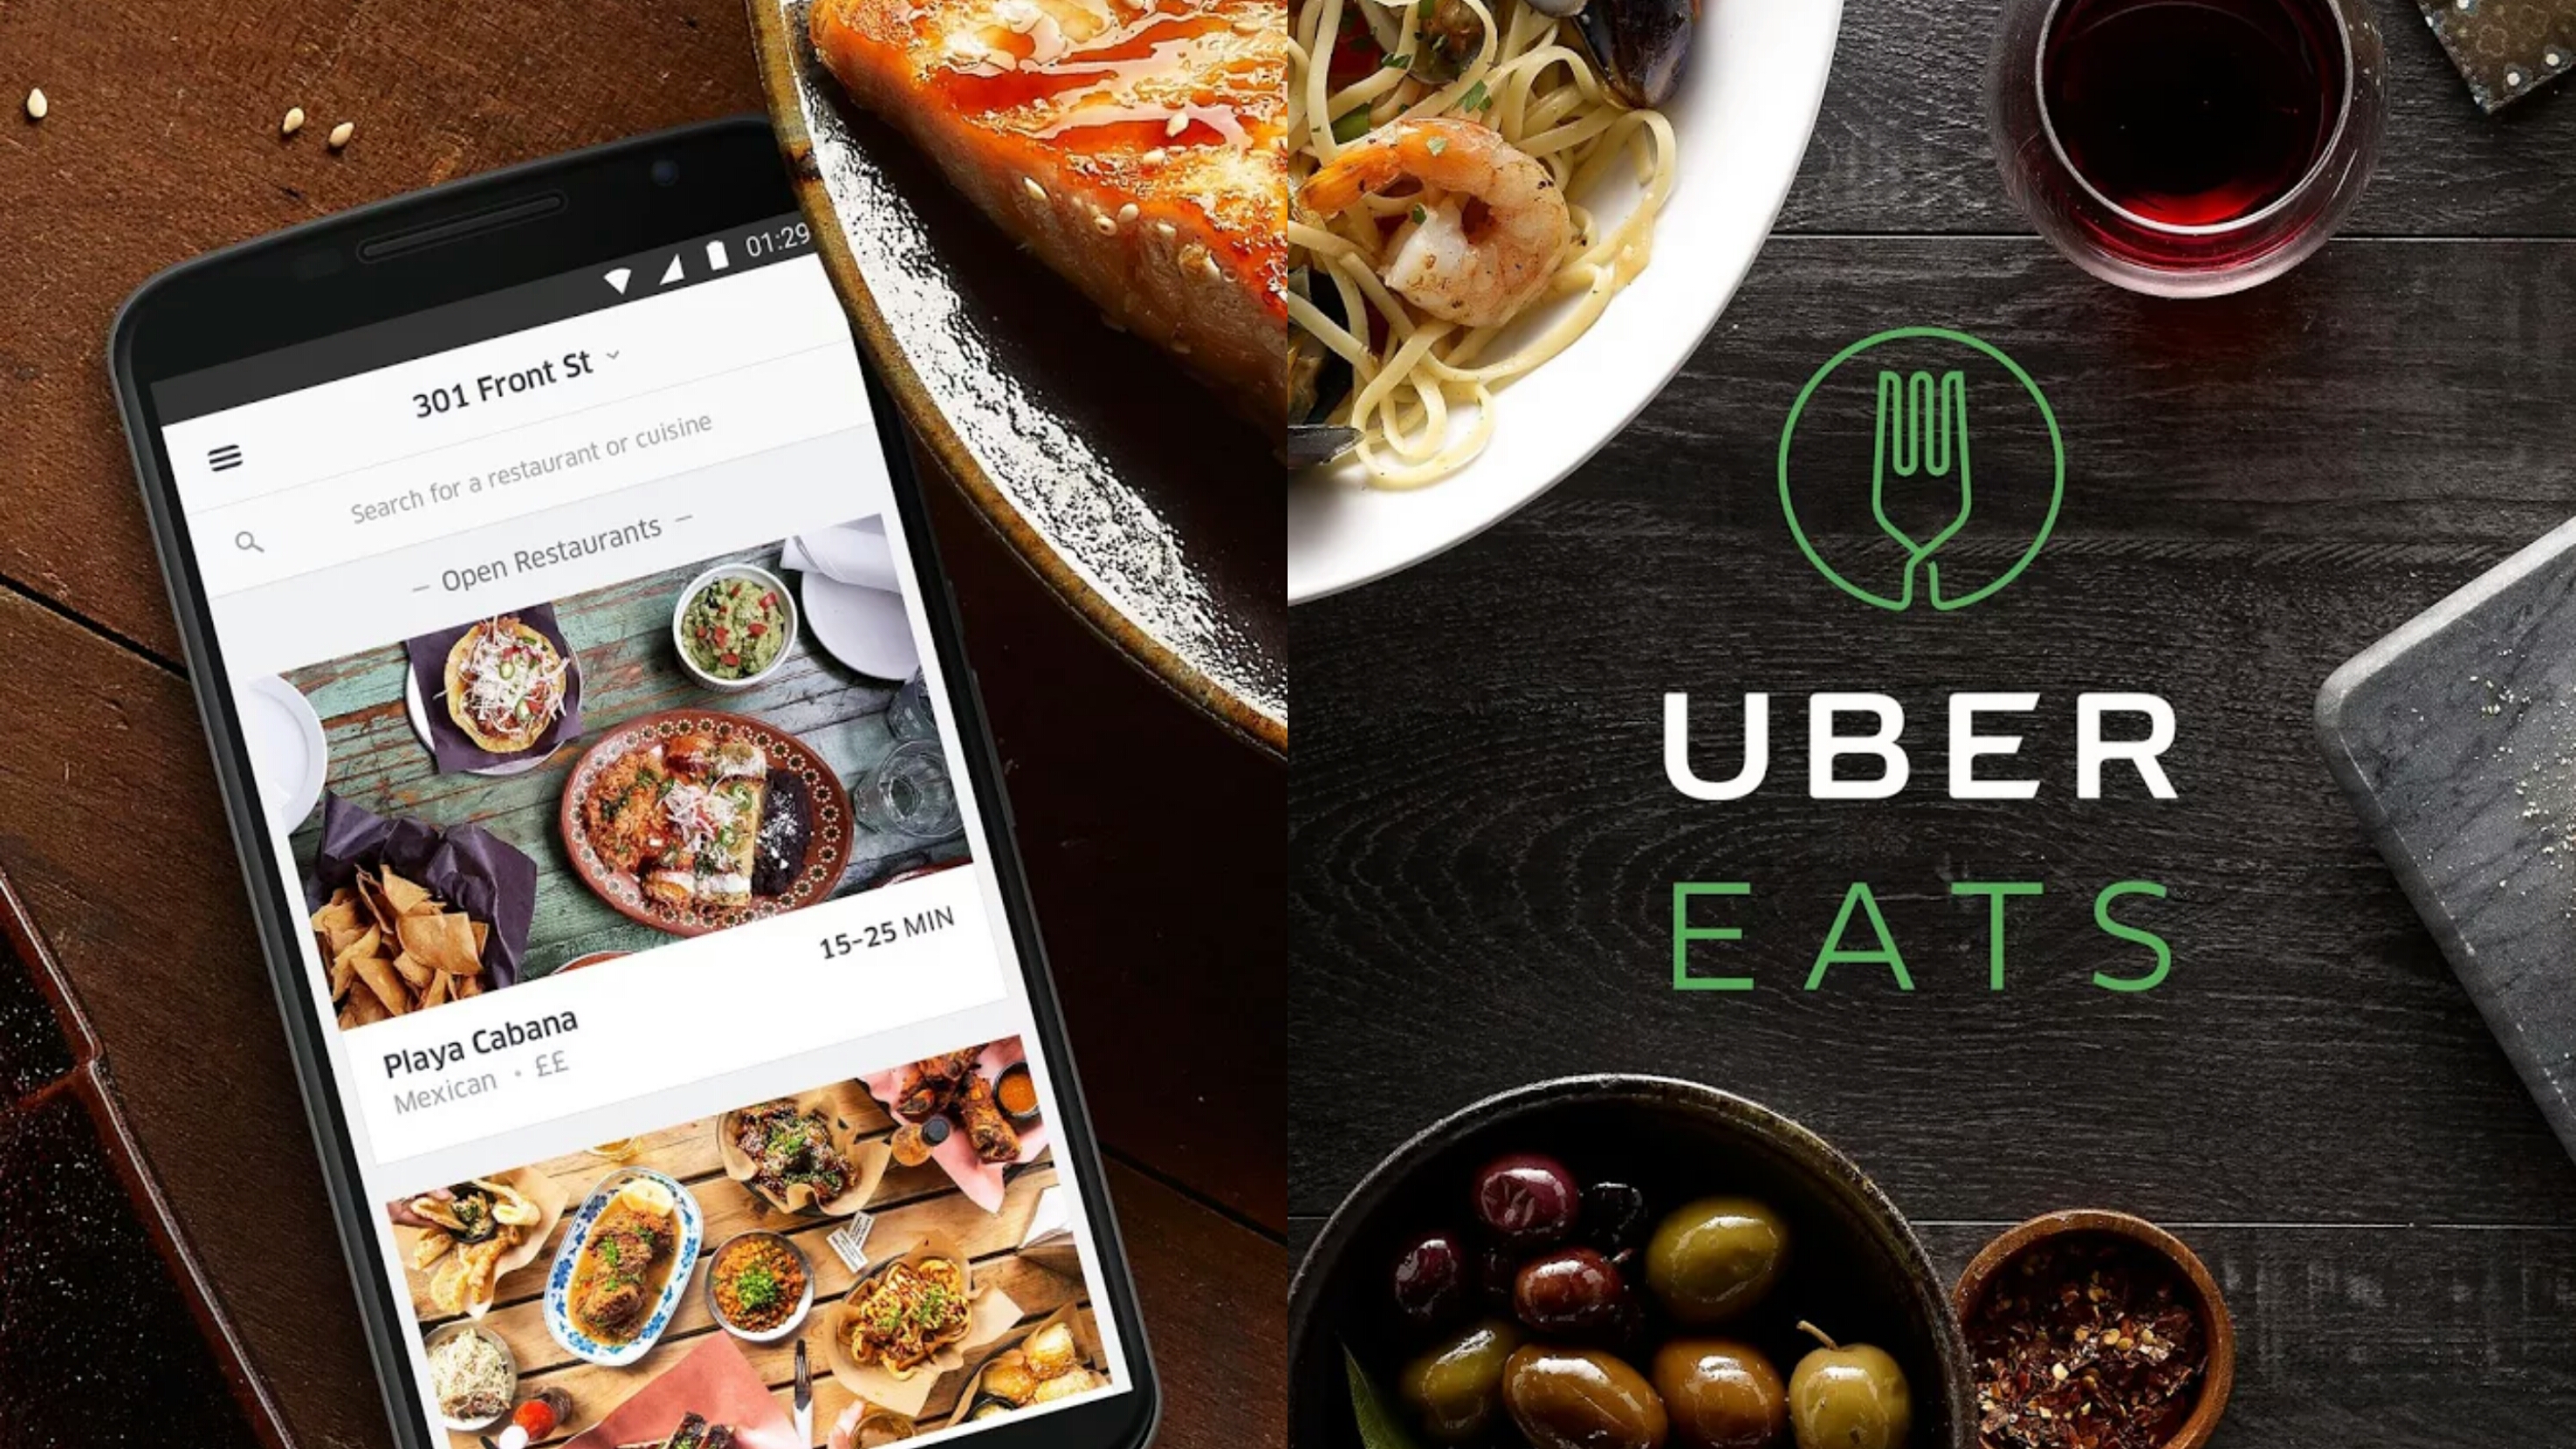 ウーバーイーツ WEB 登録方法 配達員 配達パートナー 登録 範囲 エリア UberEats Uber Eats